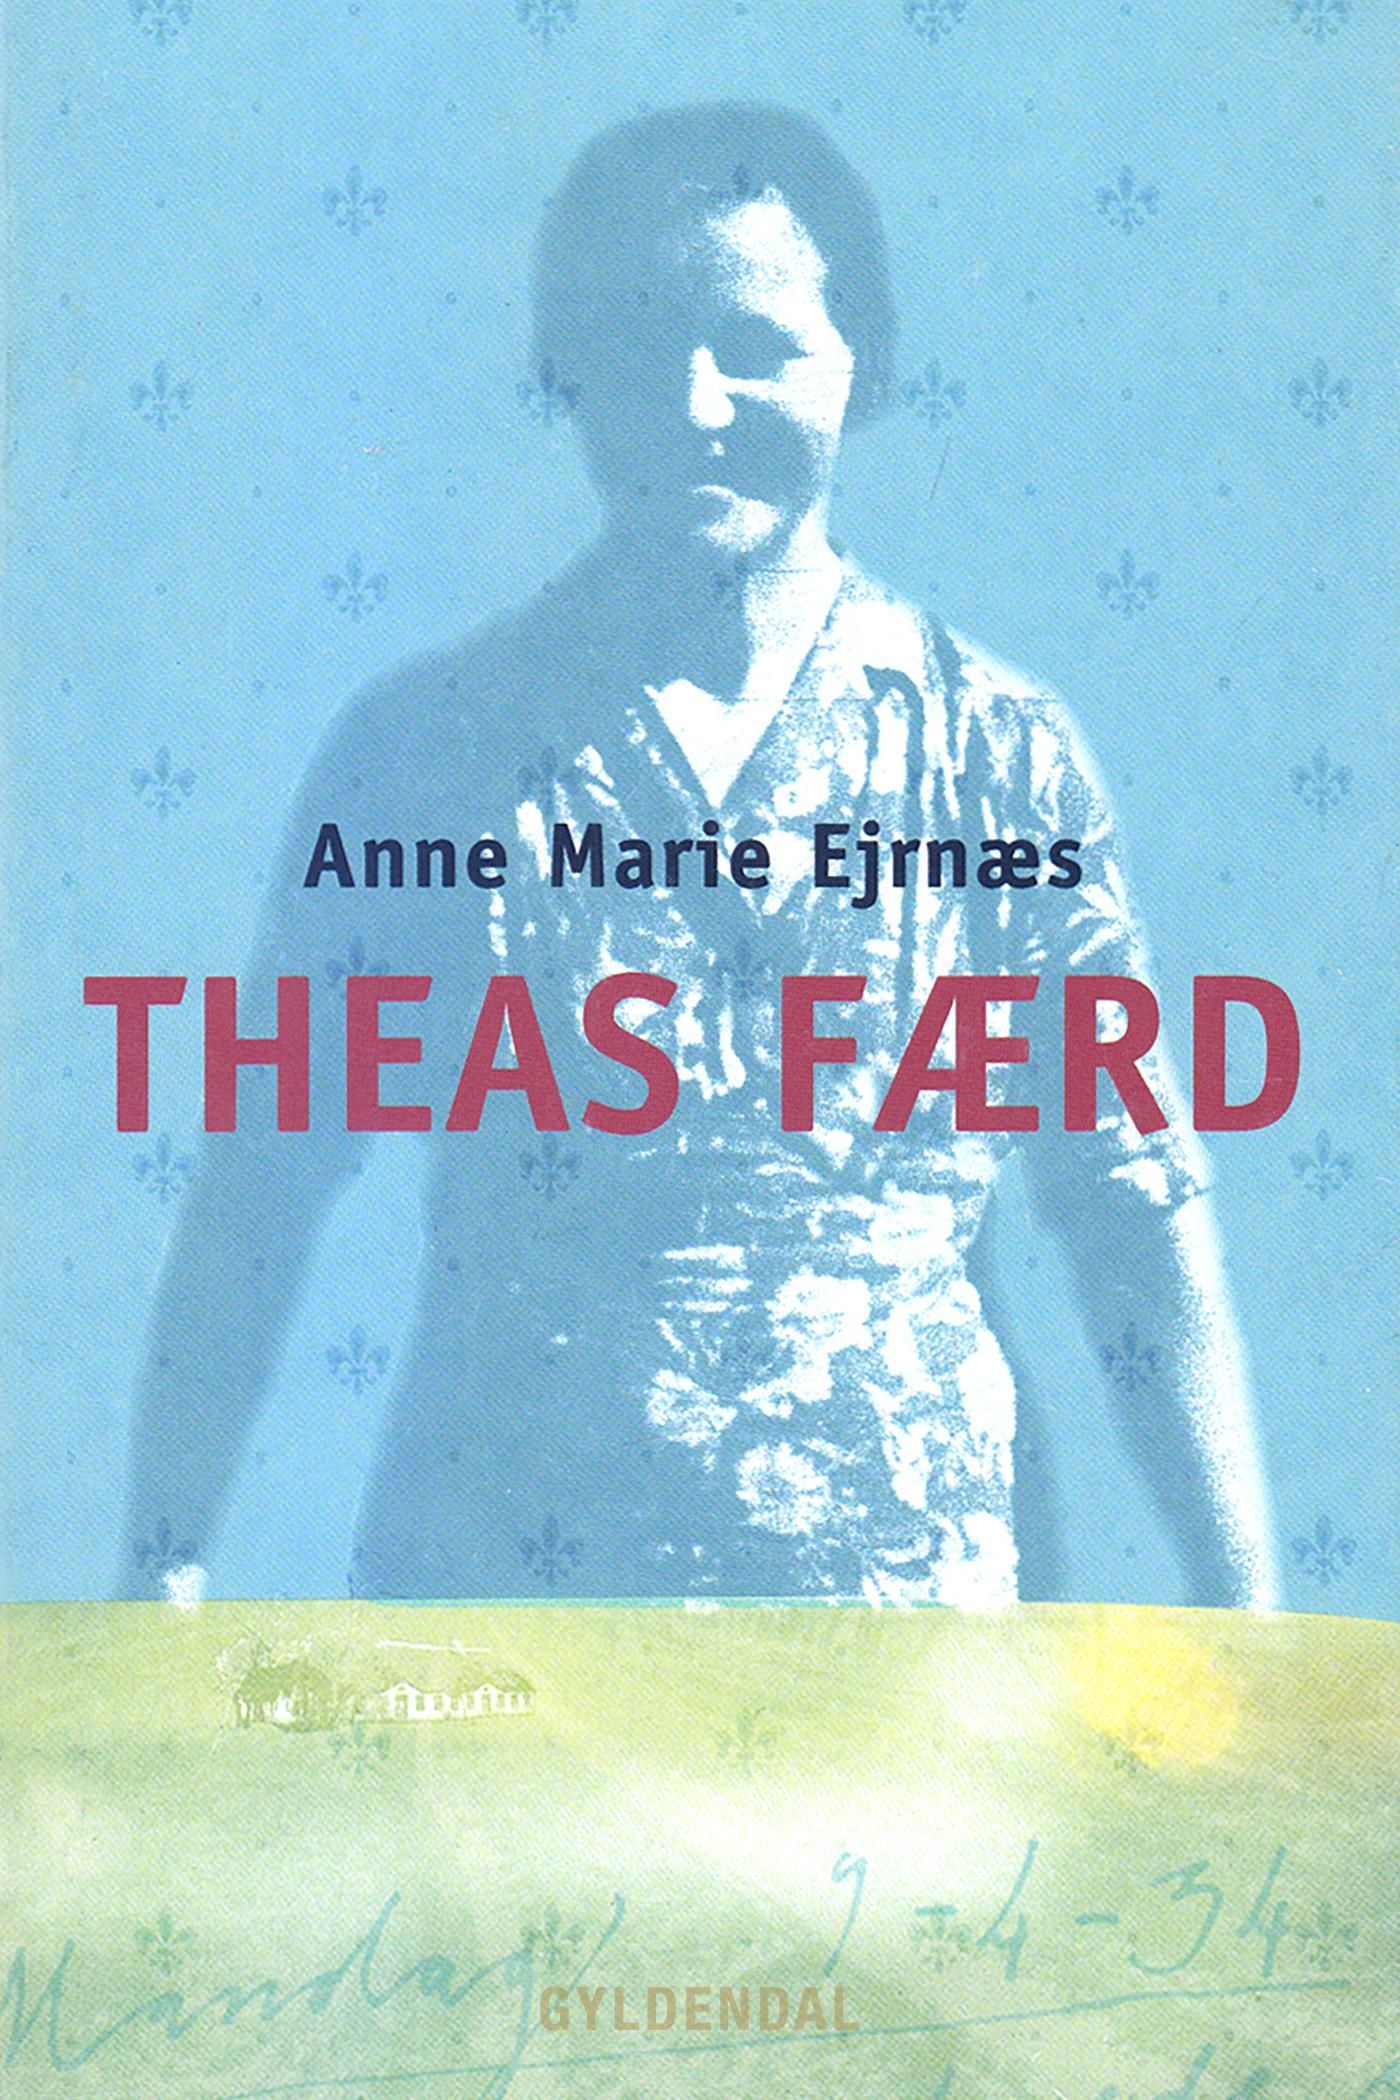 Theas færd, e-bog af Anne Marie Ejrnæs